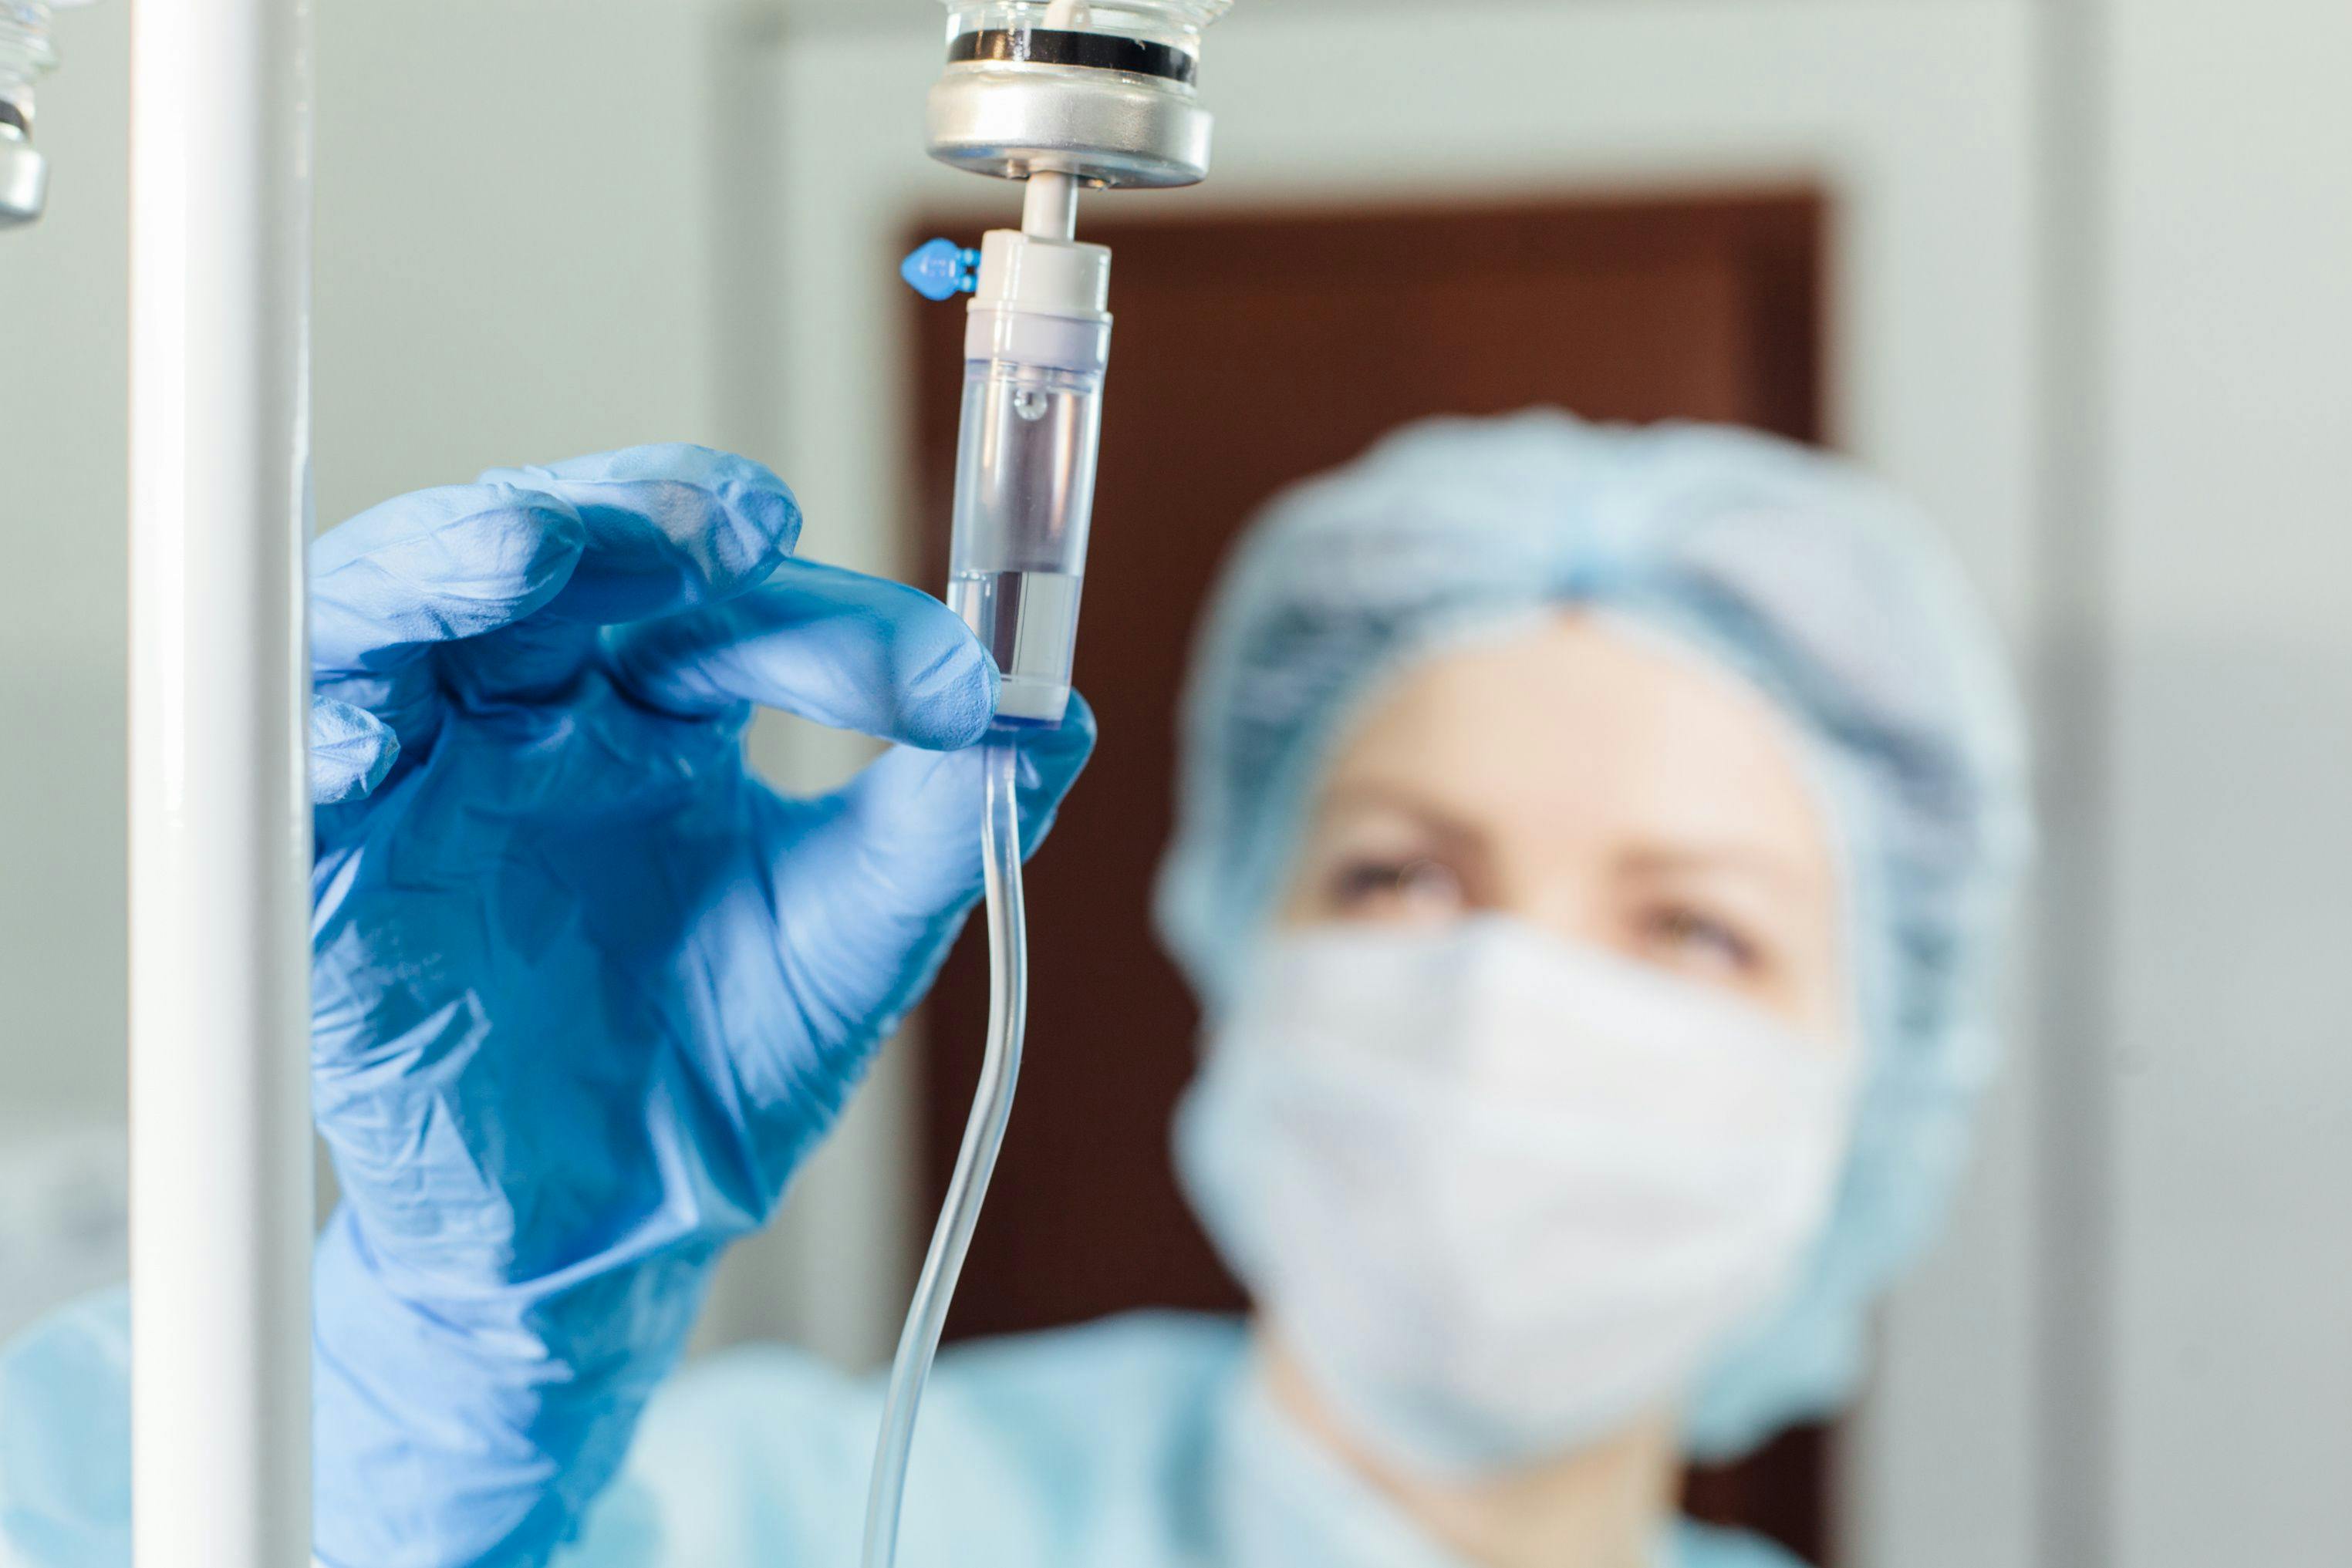 Health care worker preparing an IV drip